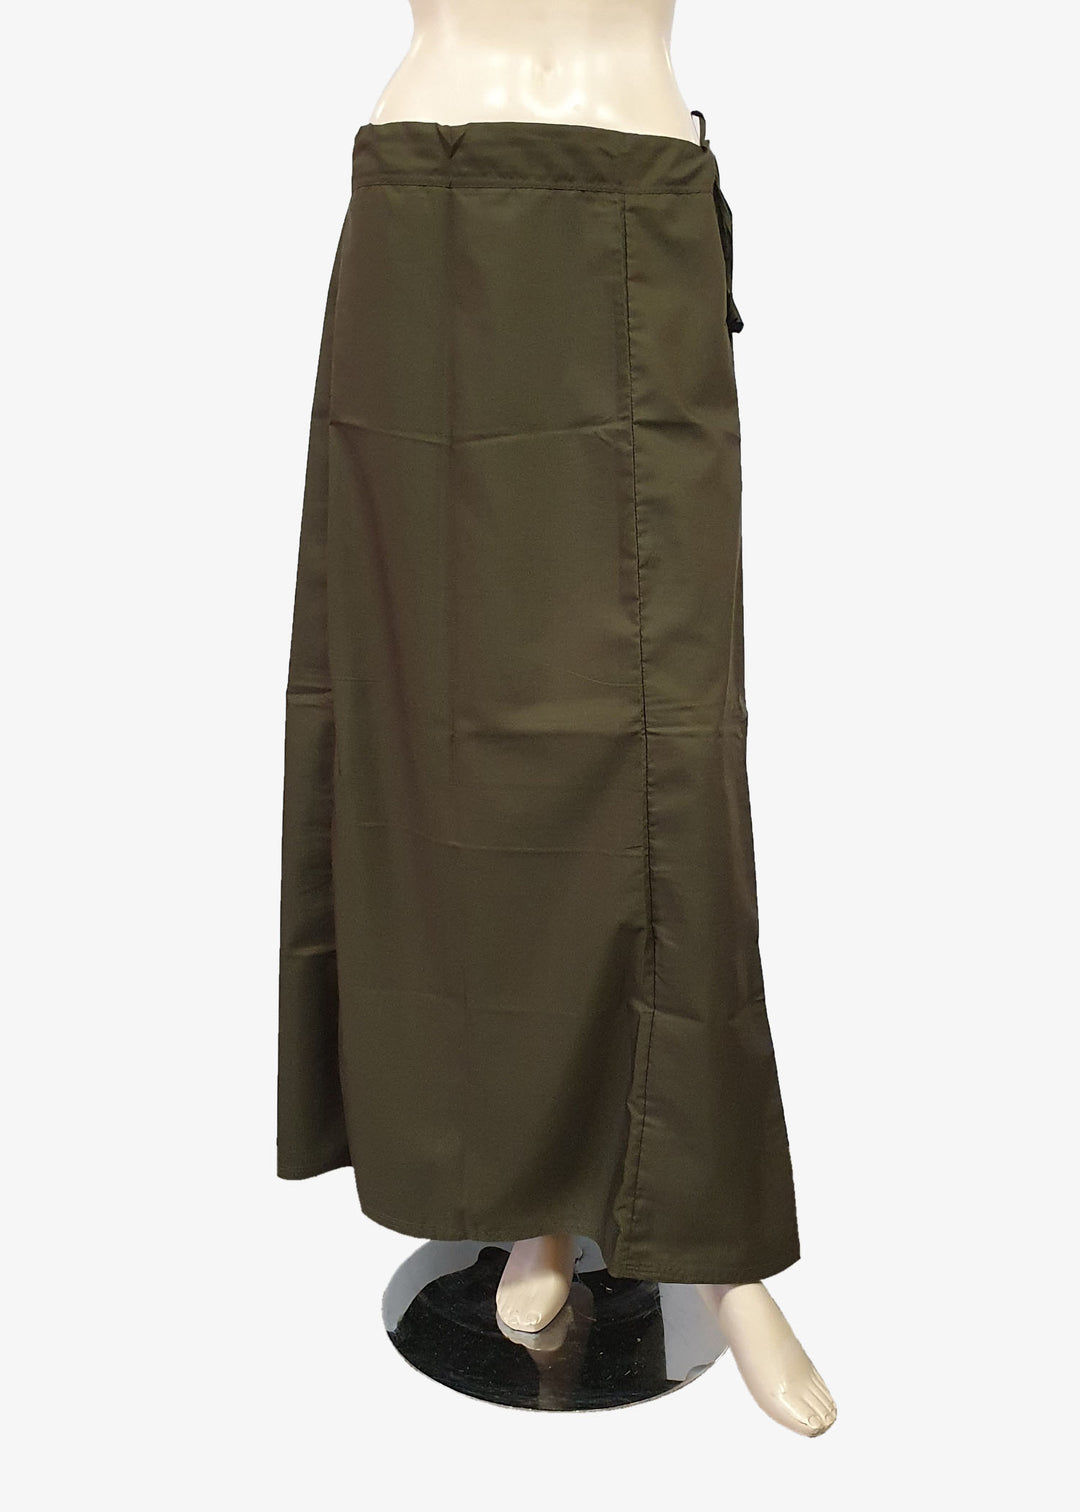 Dark Army Green Cotton Petticoat